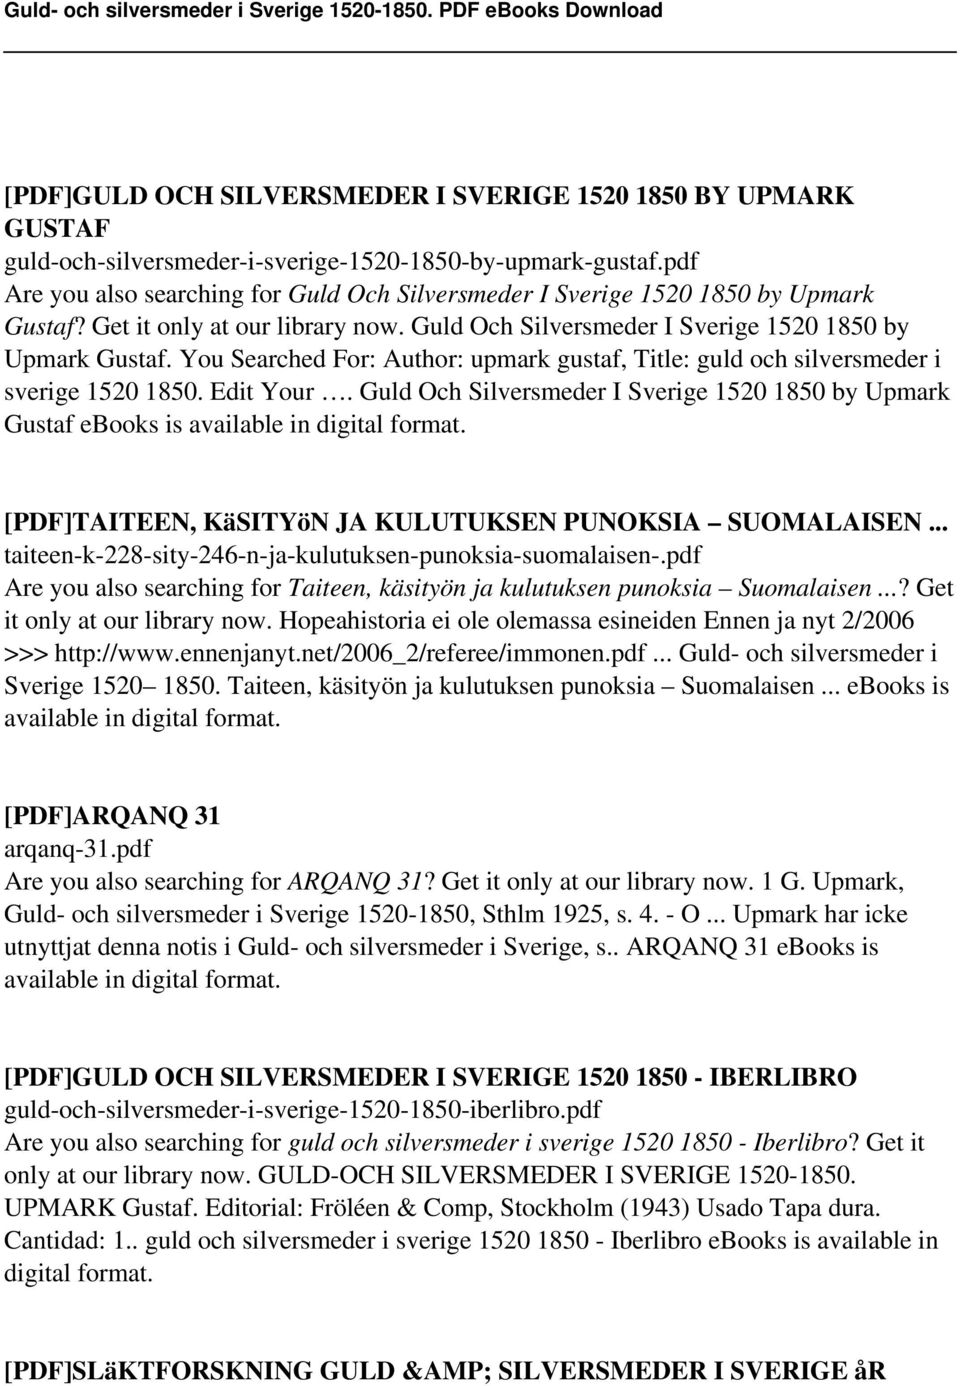 Edit Your. Guld Och Silversmeder I Sverige 1520 1850 by Upmark Gustaf ebooks is [PDF]TAITEEN, KäSITYöN JA KULUTUKSEN PUNOKSIA SUOMALAISEN... taiteen-k-228-sity-246-n-ja-kulutuksen-punoksia-suomalaisen-.